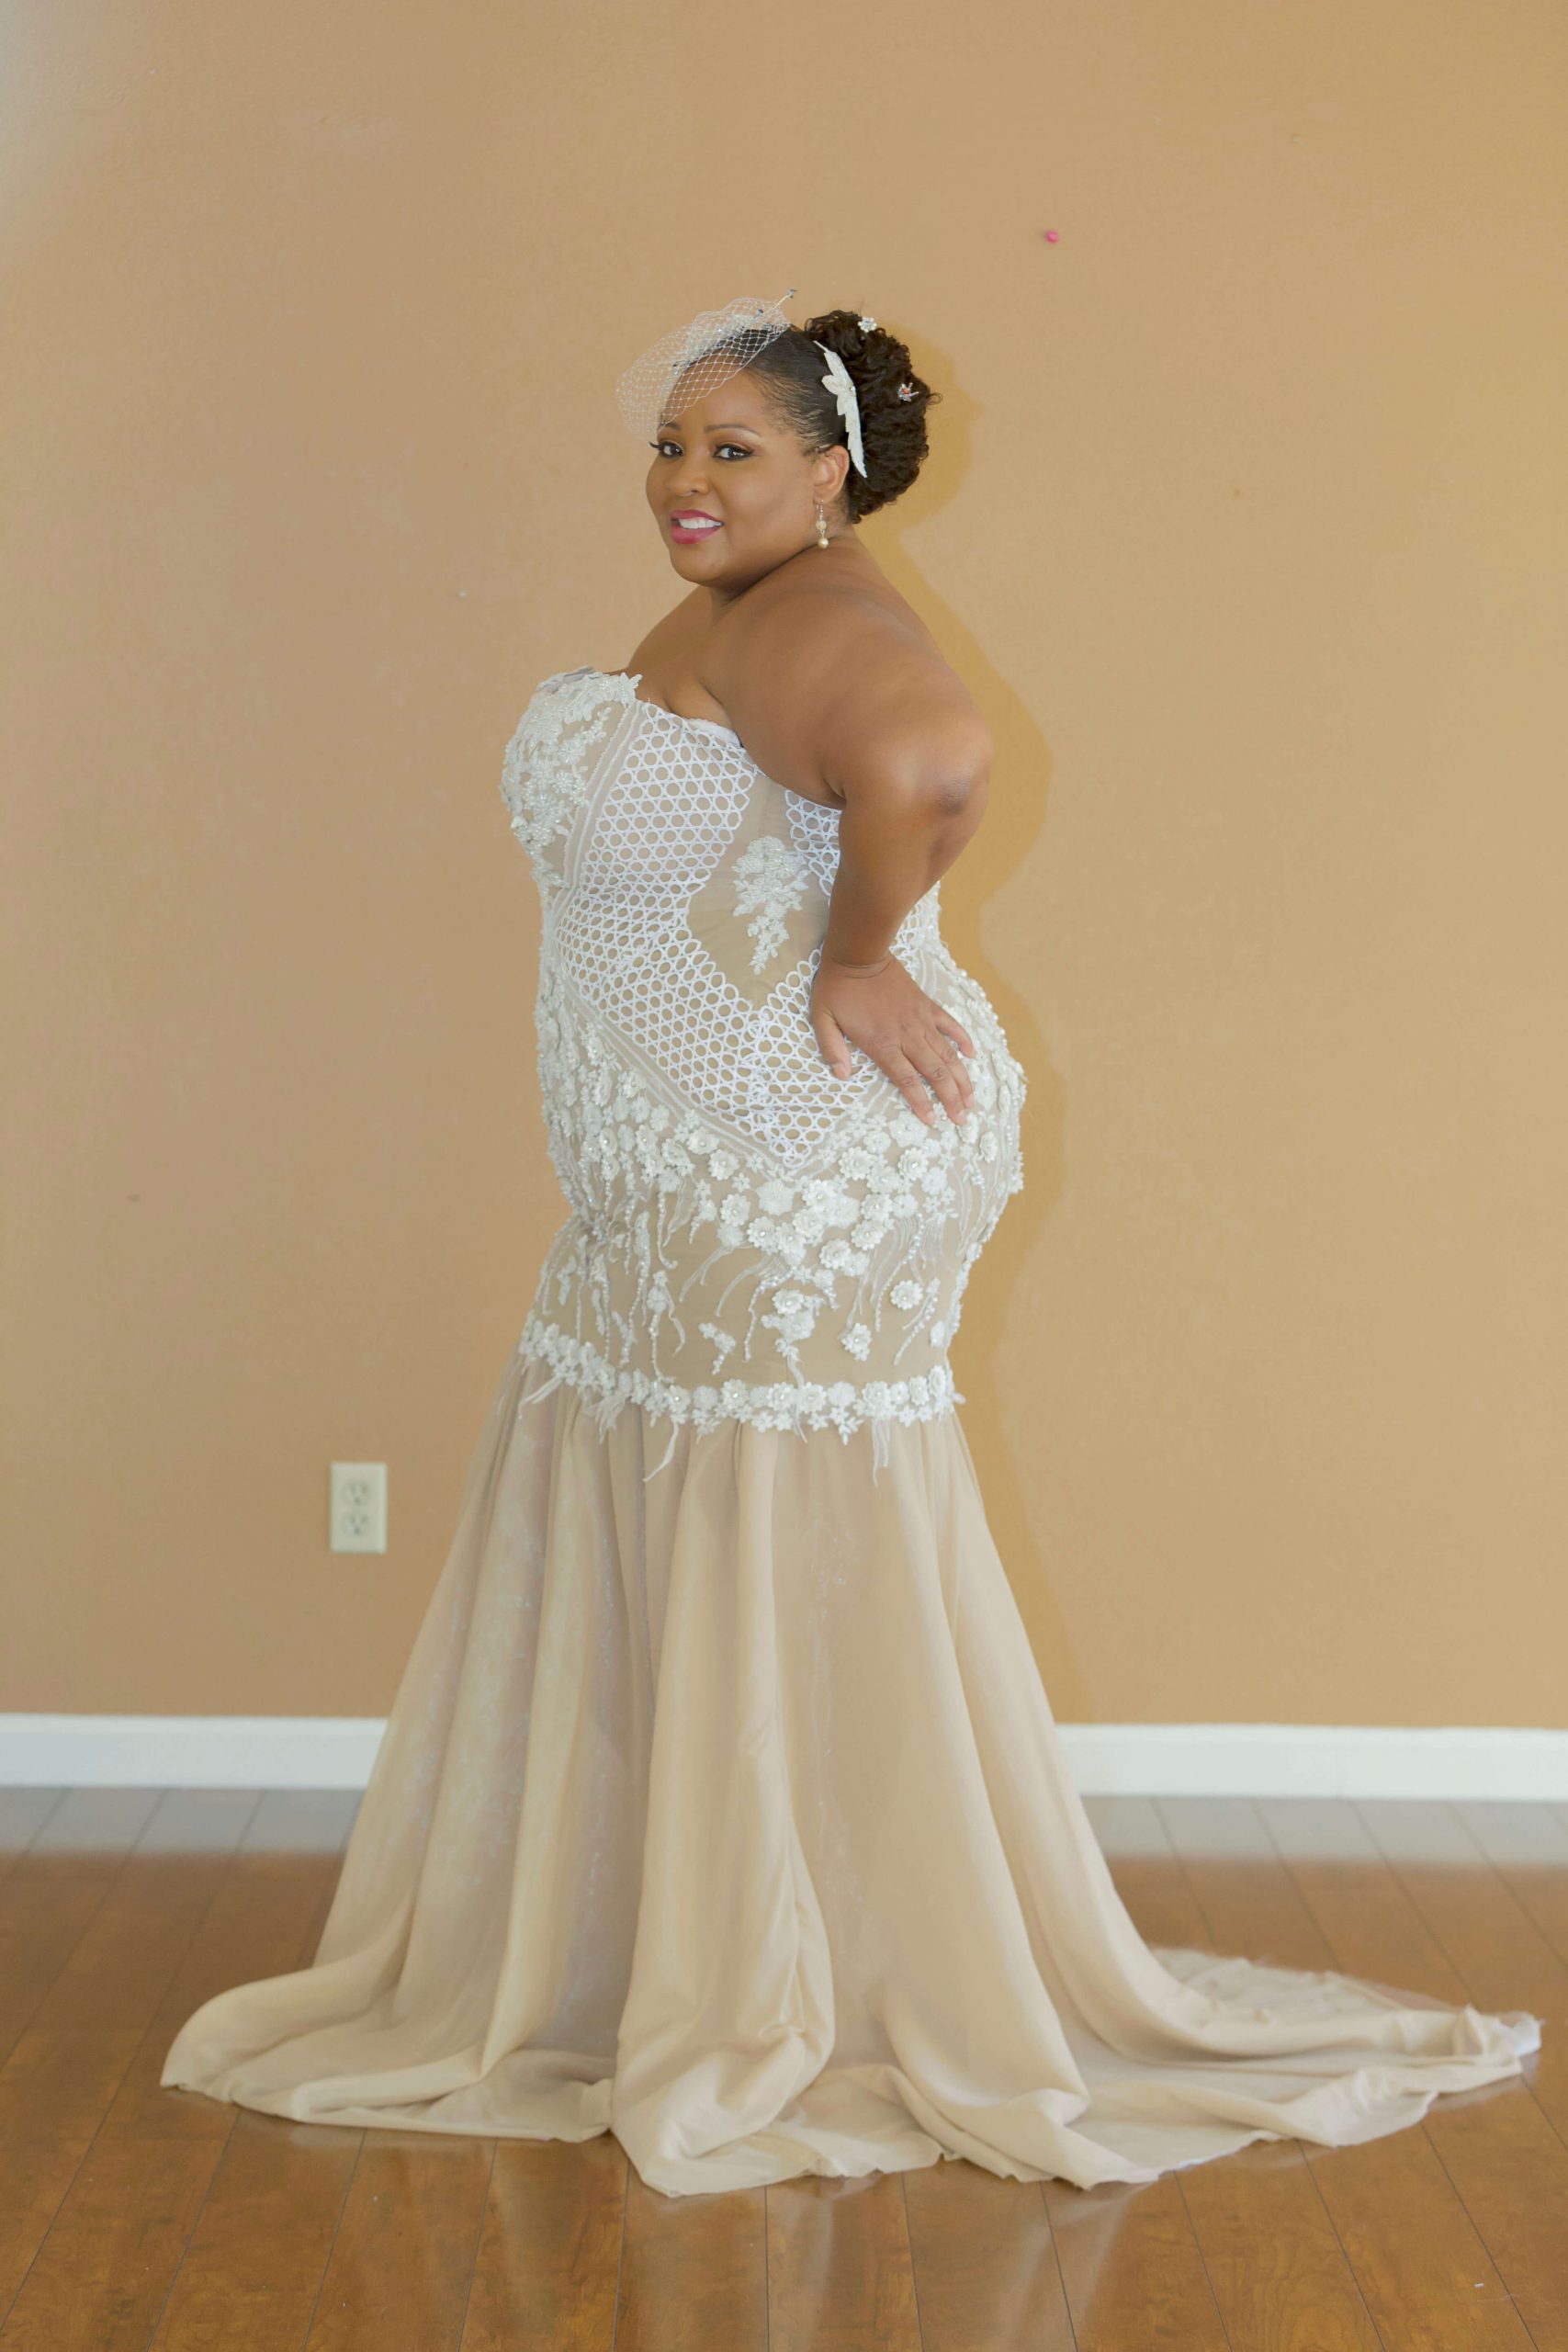 skarpt Robe dødbringende Plus Size Wedding Dress, Custom Design Wedding Dress, Built-in Corset.